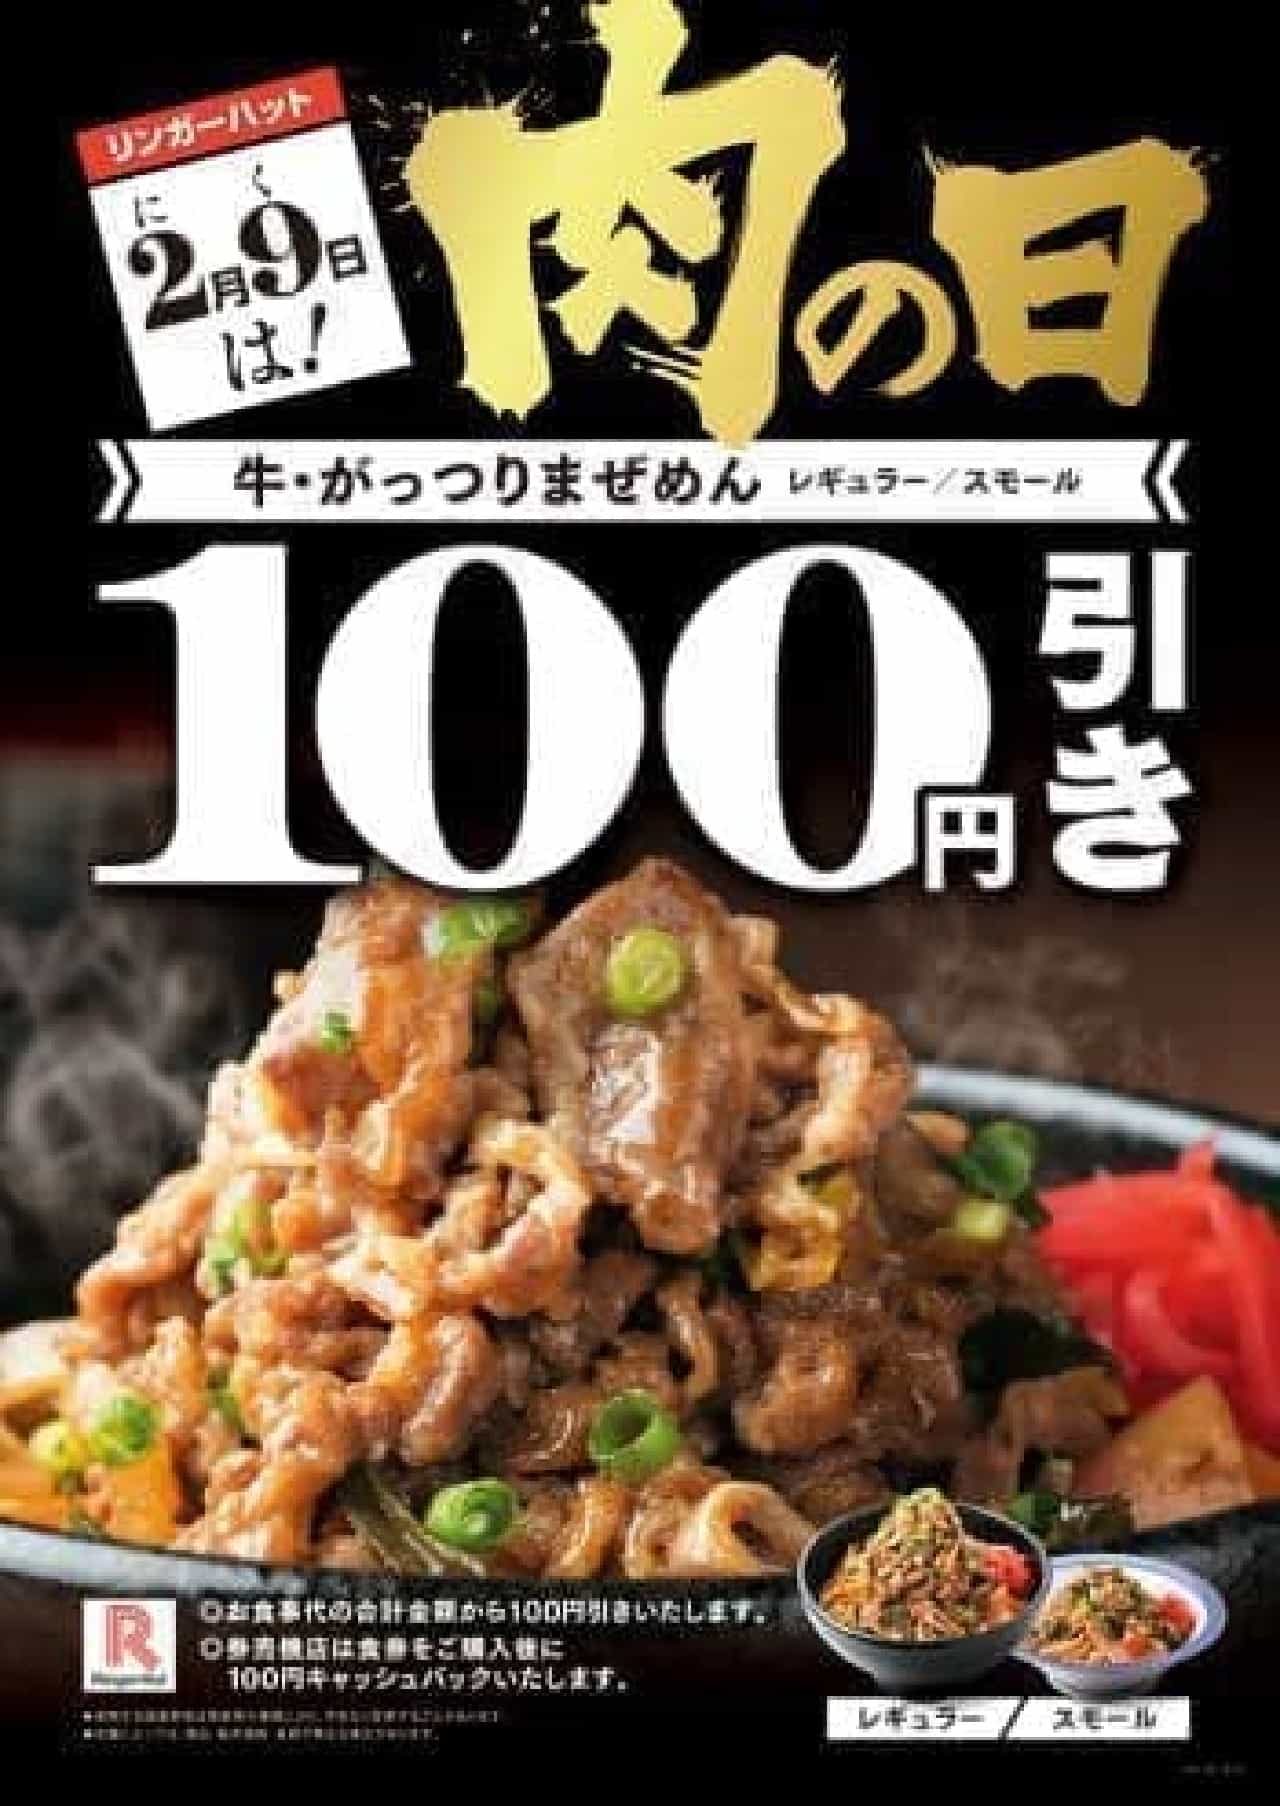 100 yen discount on "Beef / Gattsuri Mazemen" at Ringer Hut